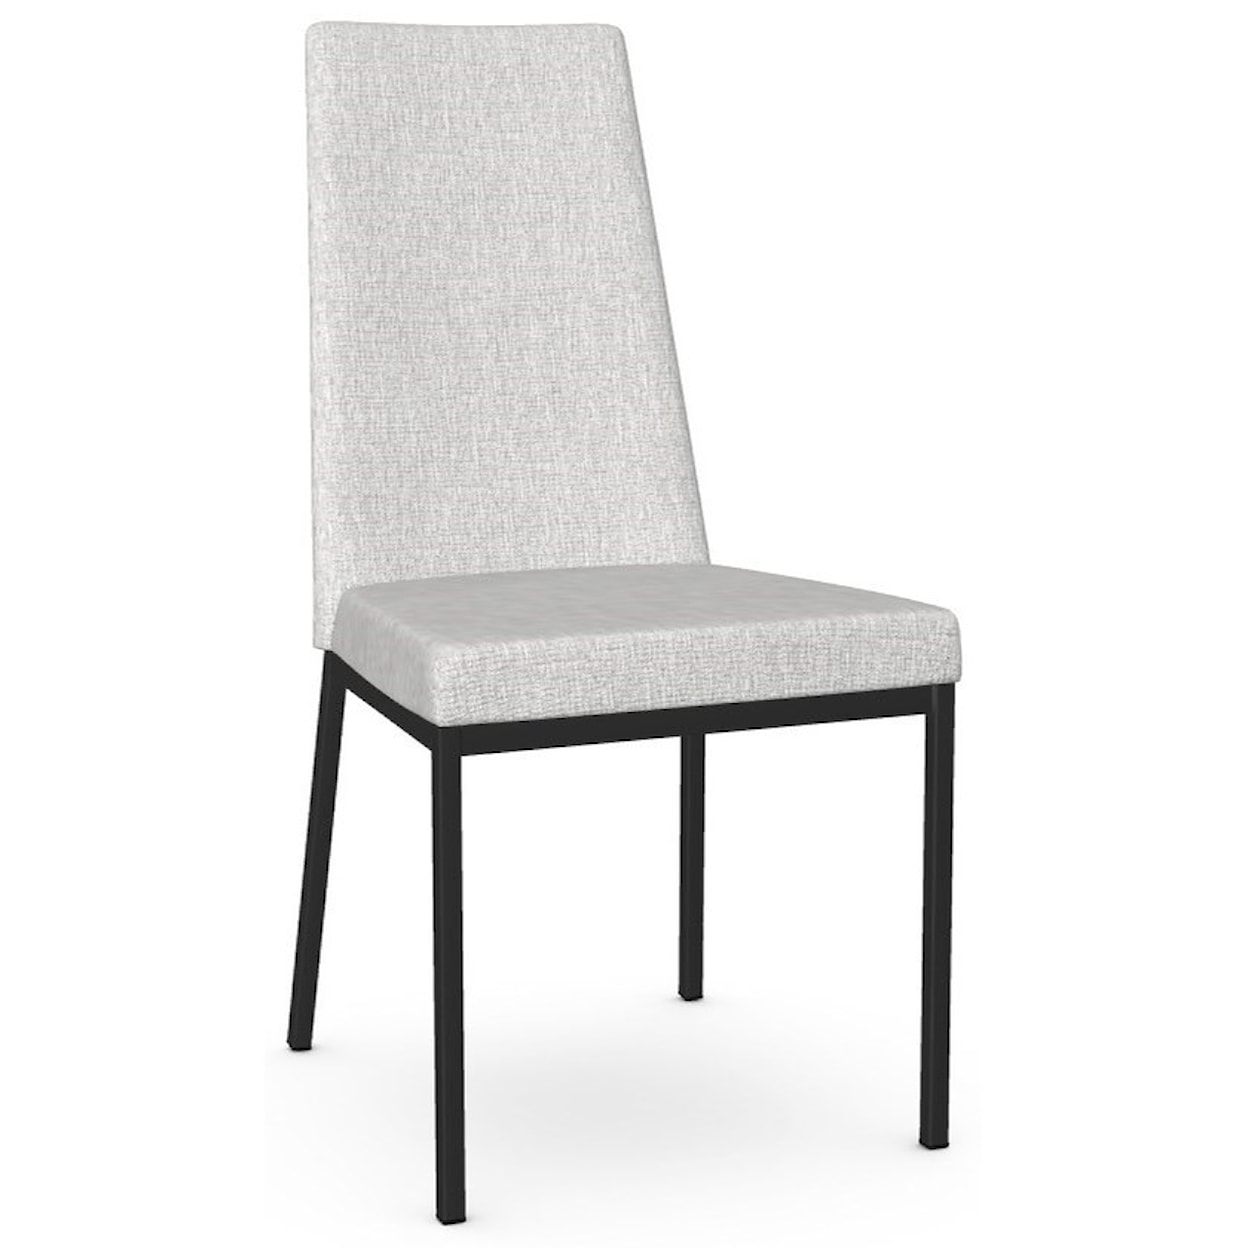 Amisco Urban Linea Chair